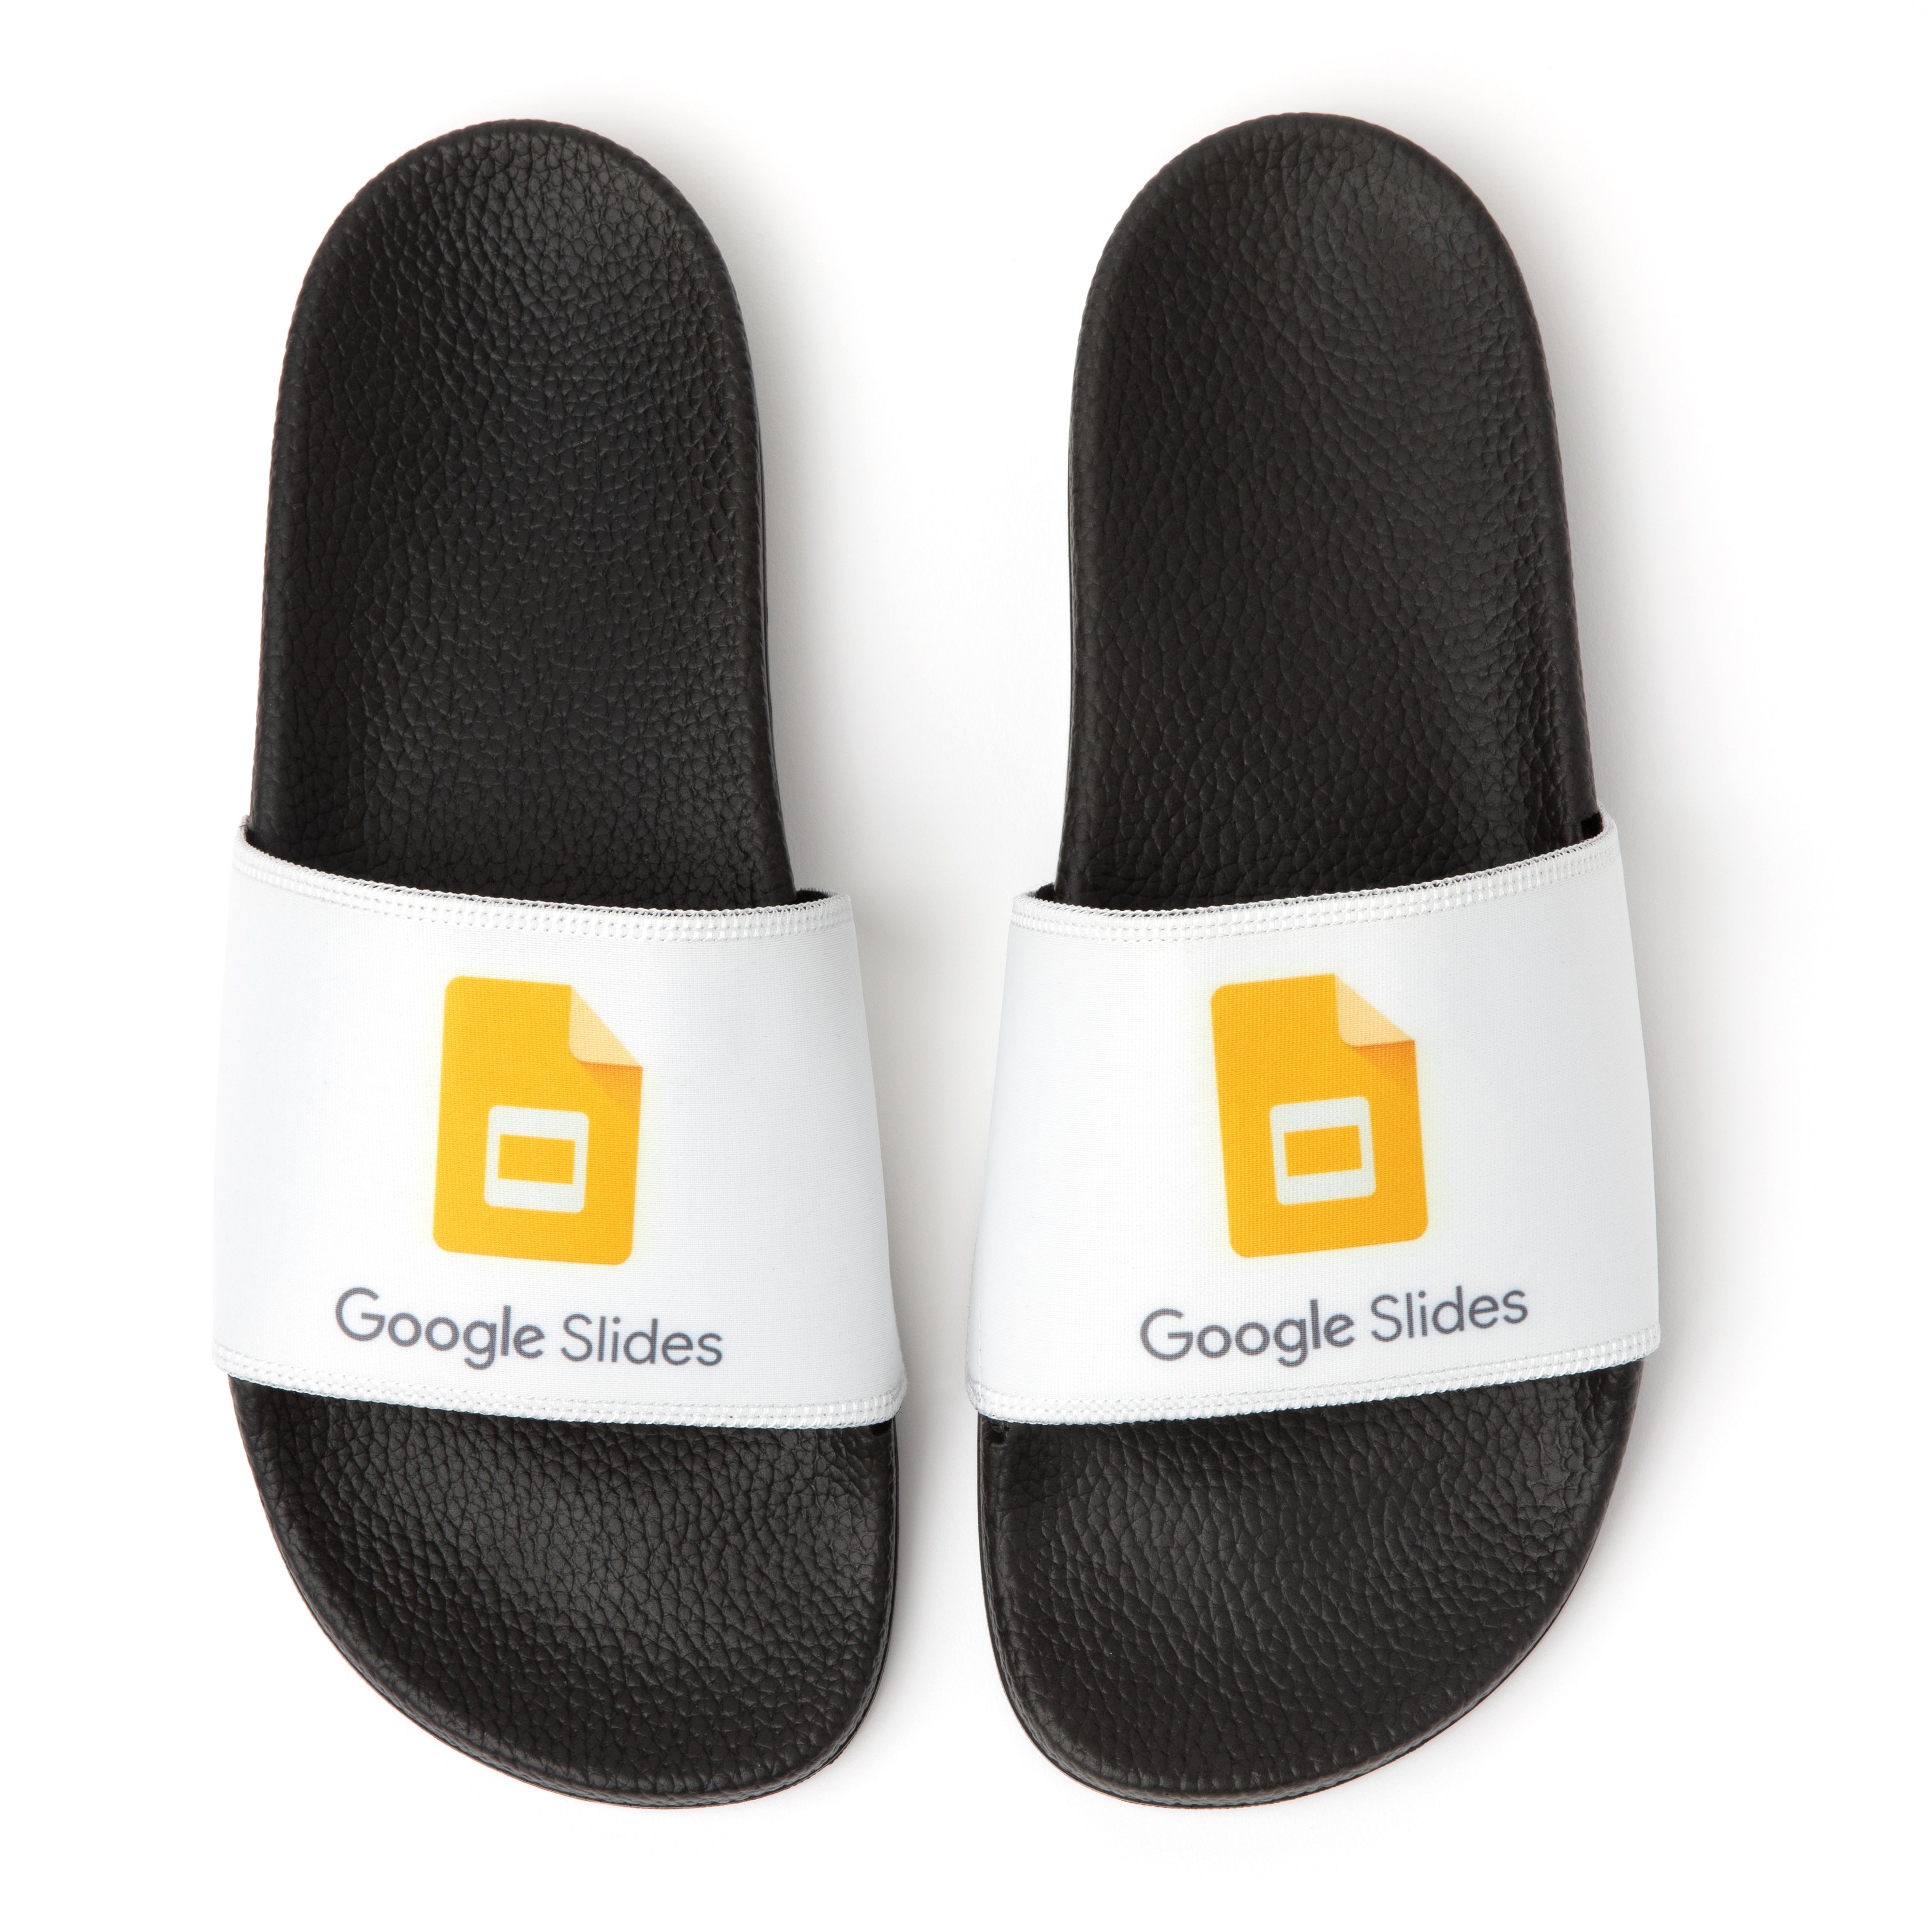 Google Slides Slide Sandals